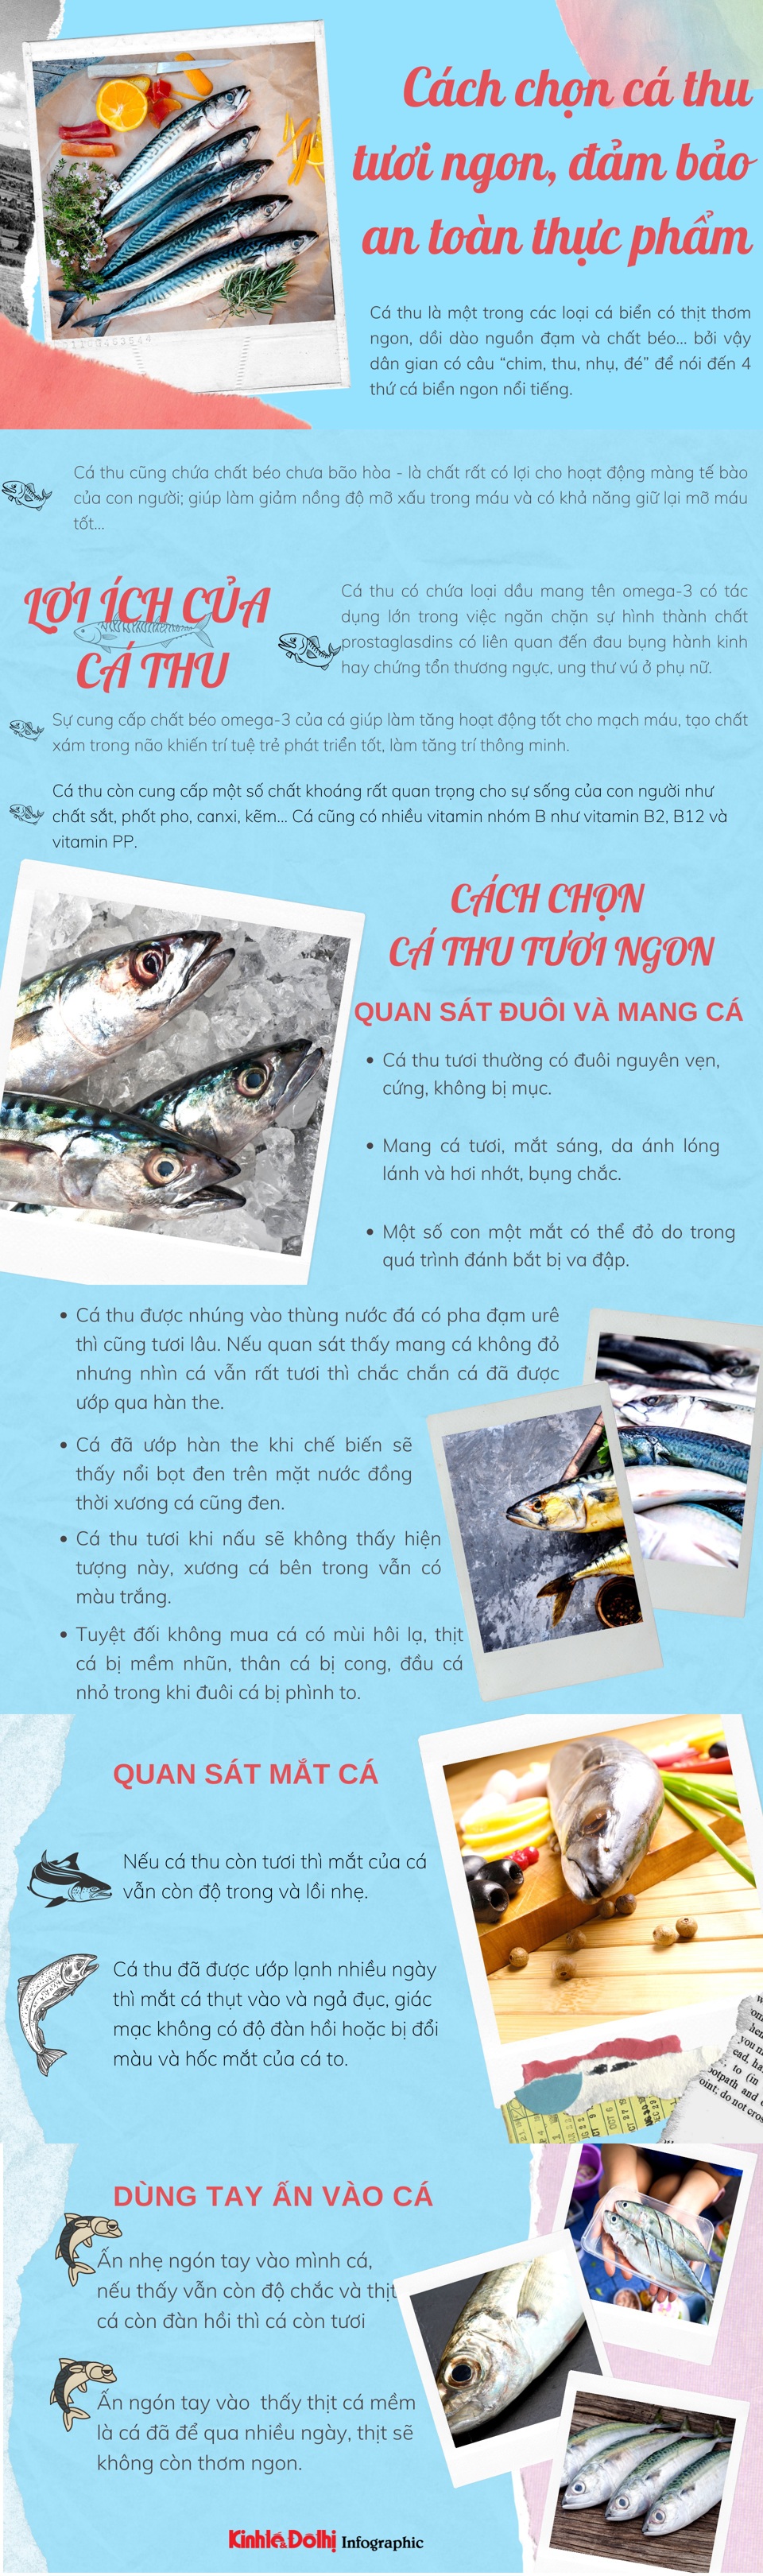 [Infographic] Cách chọn cá thu tươi ngon, đảm bảo an toàn thực phẩm - Ảnh 1